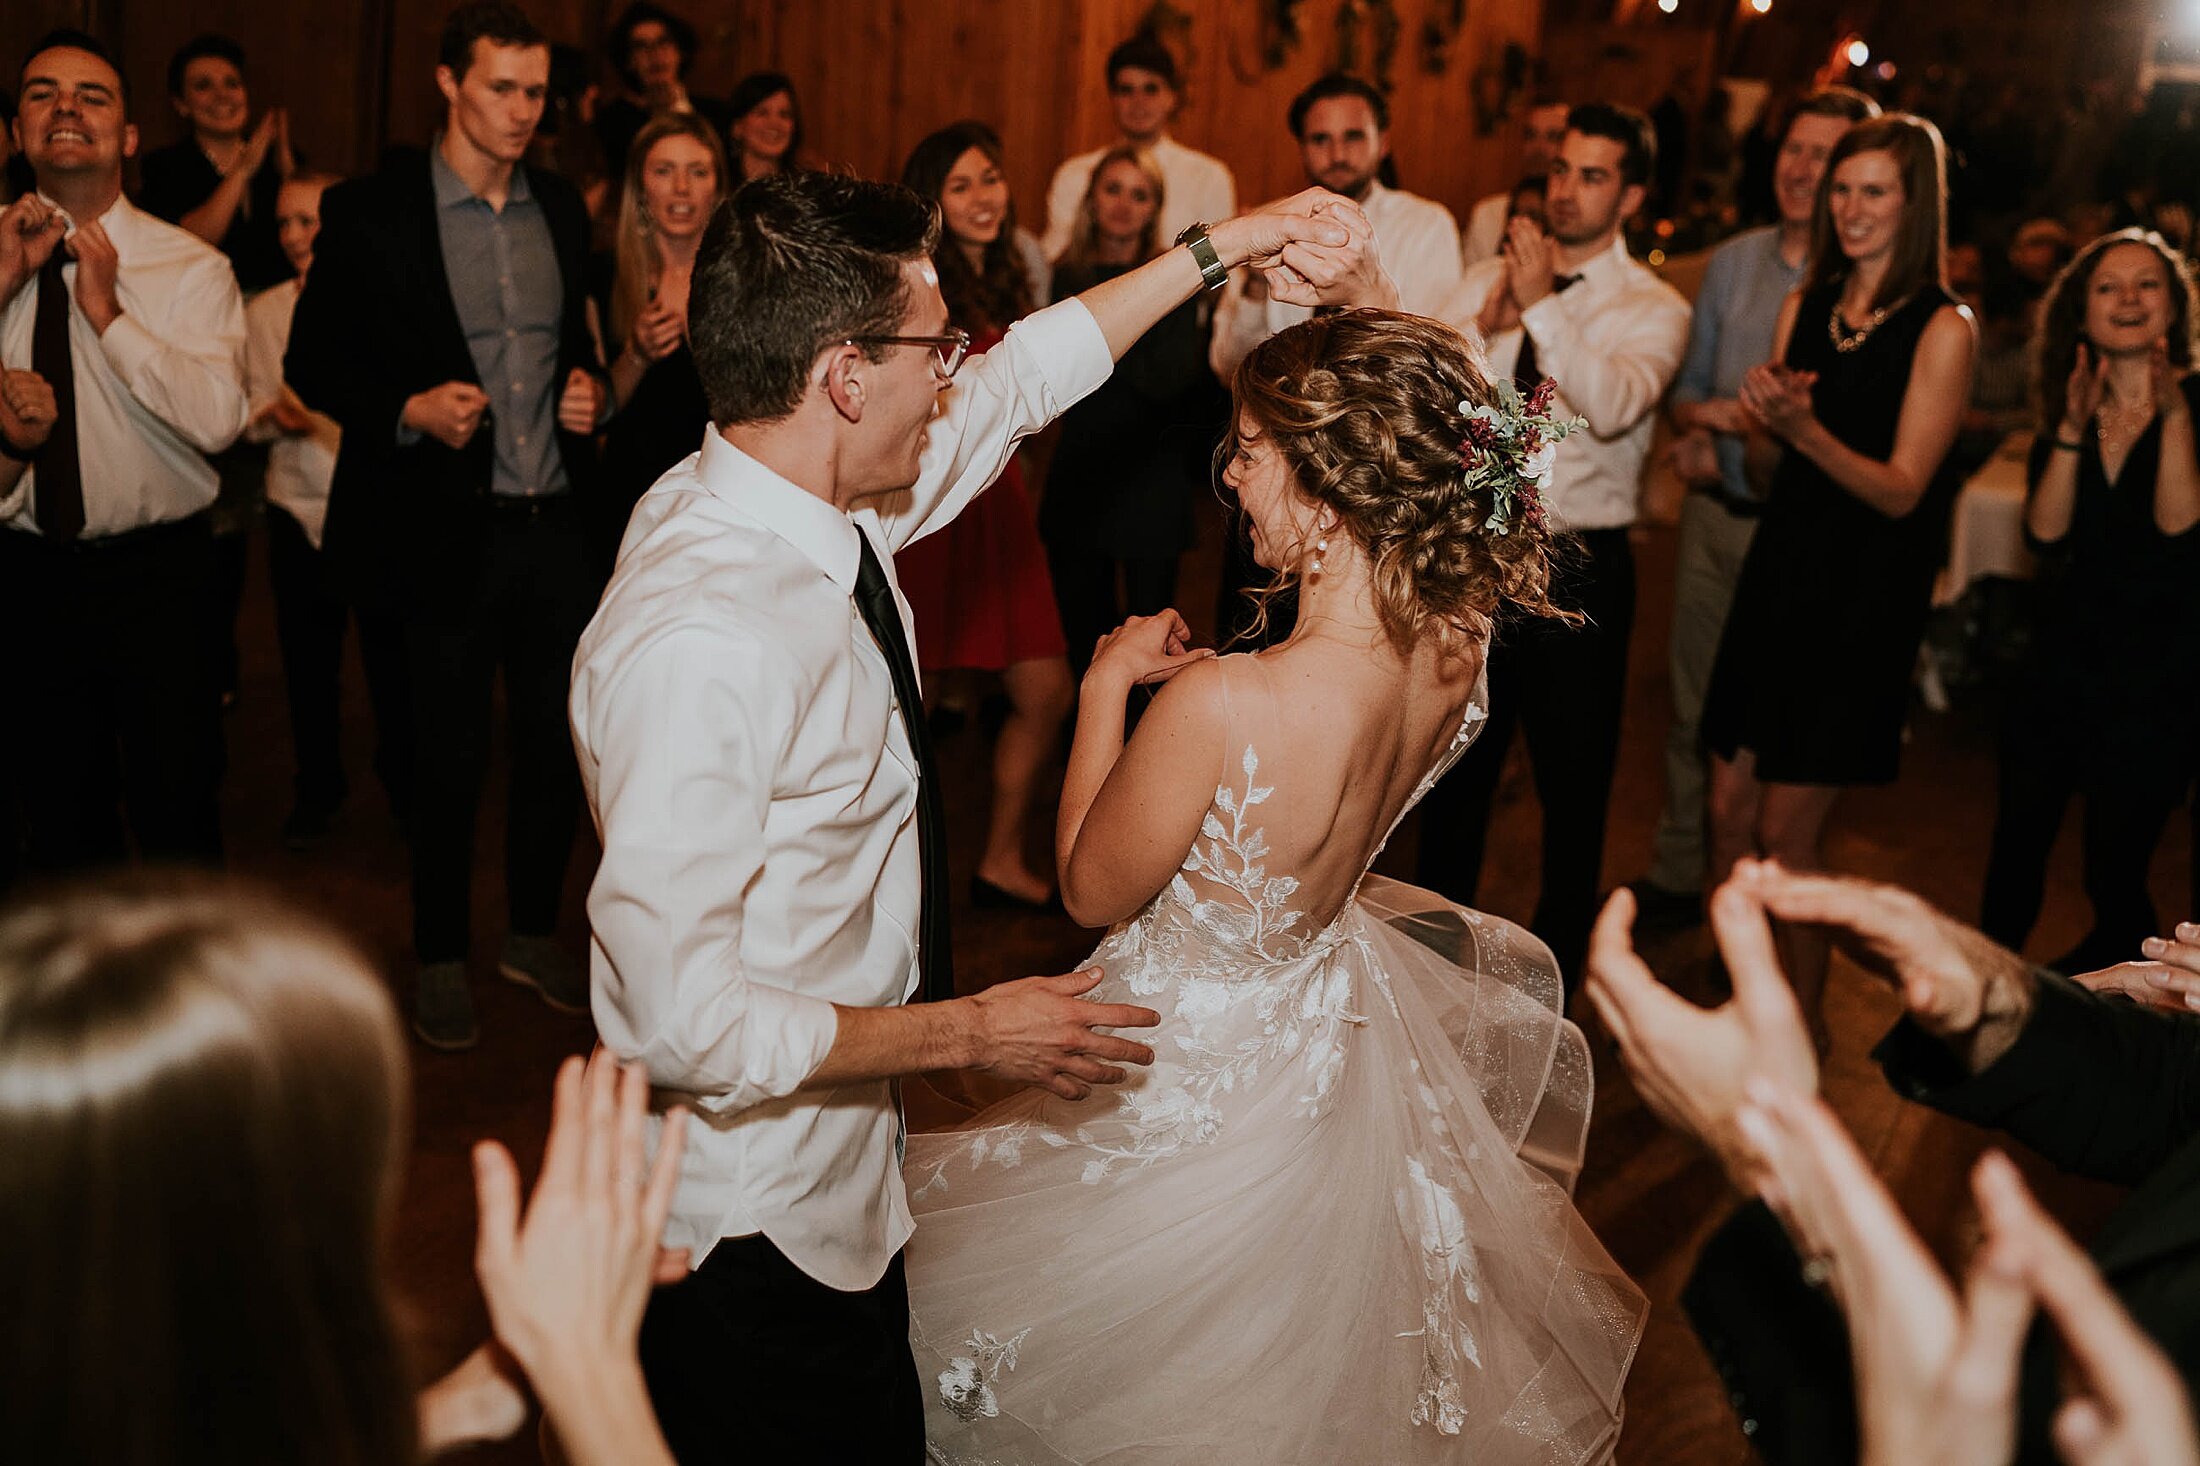 stevens point winter wedding erons event barn dance floor